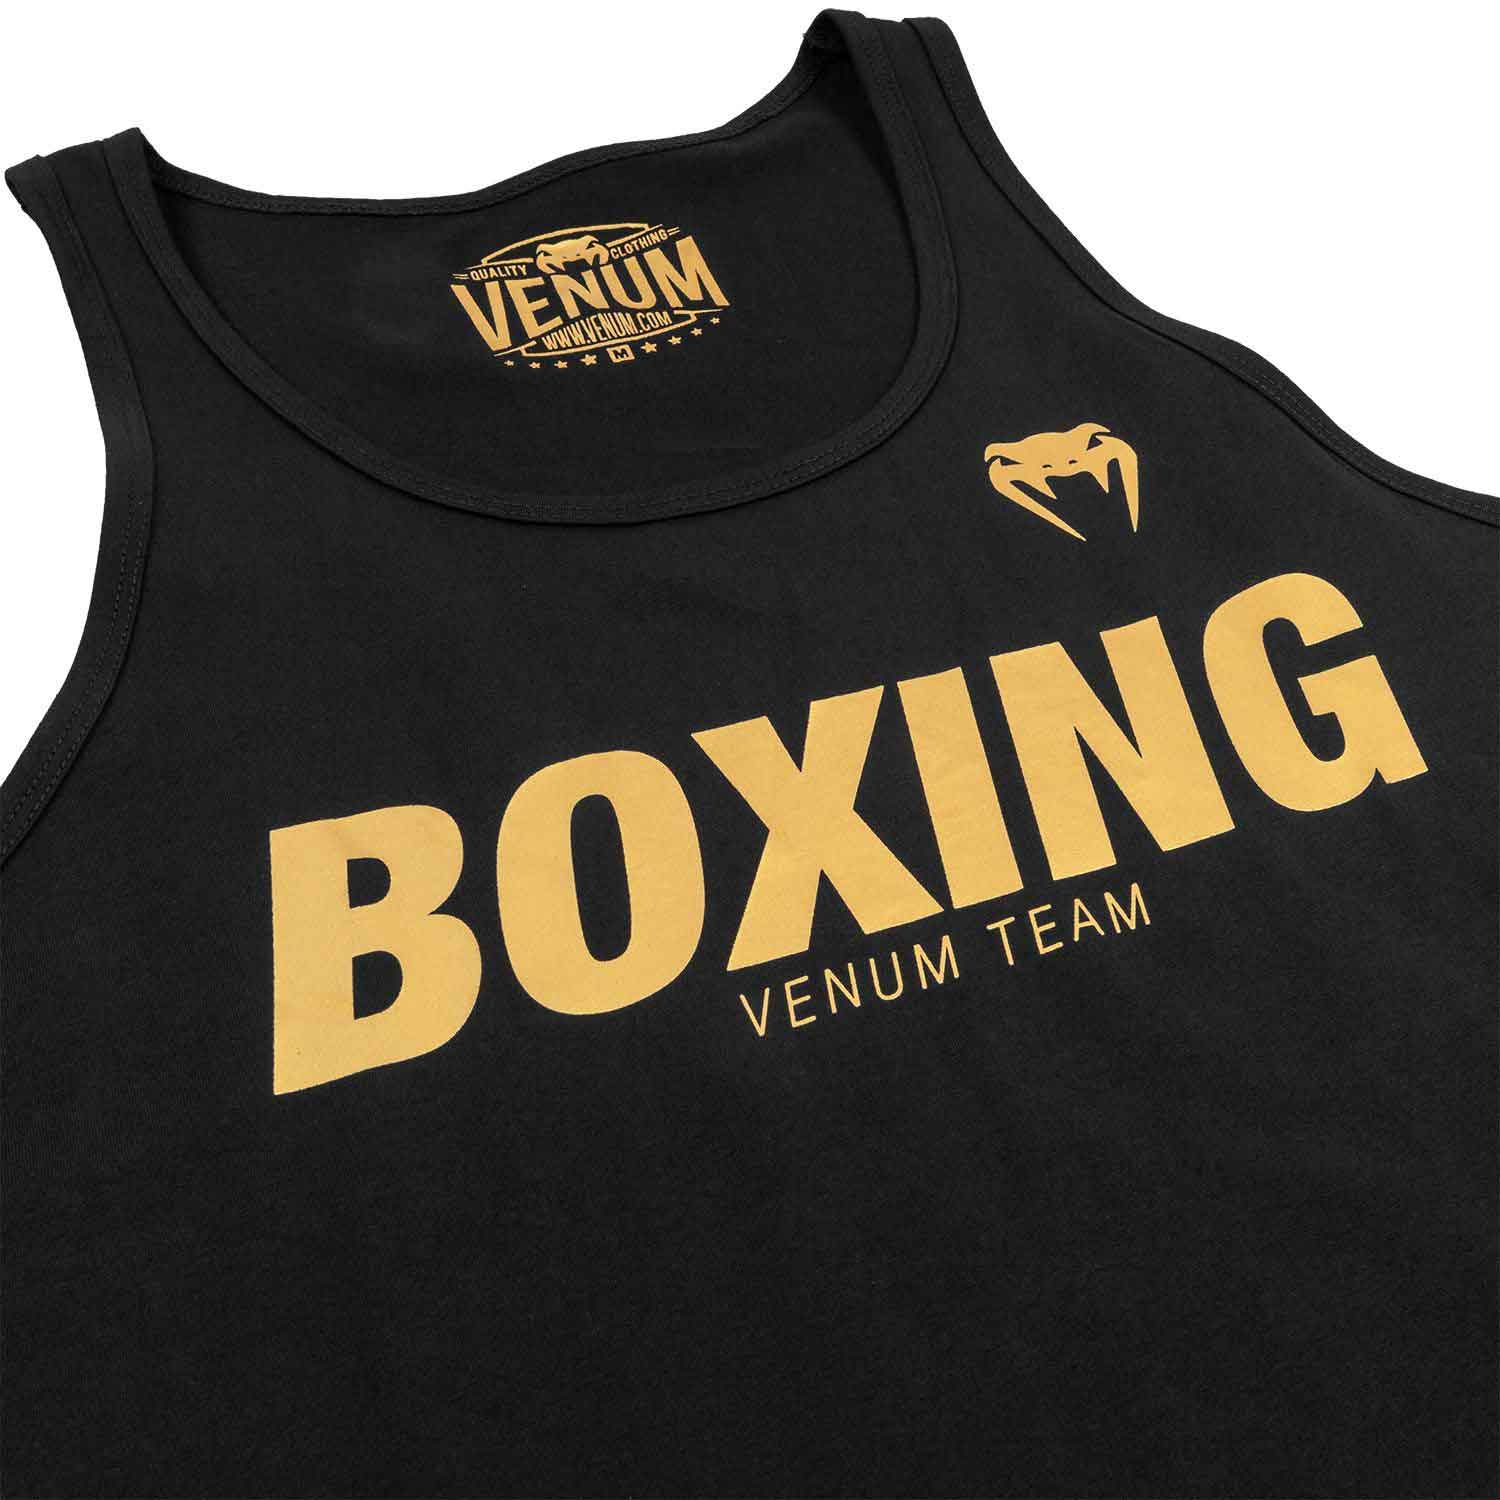 VENUM／ヴェナム タンクトップ BOXING VT TANK TOP／ボクシング VT（ヴェナムチーム）タンクトップ（黒／ゴールド